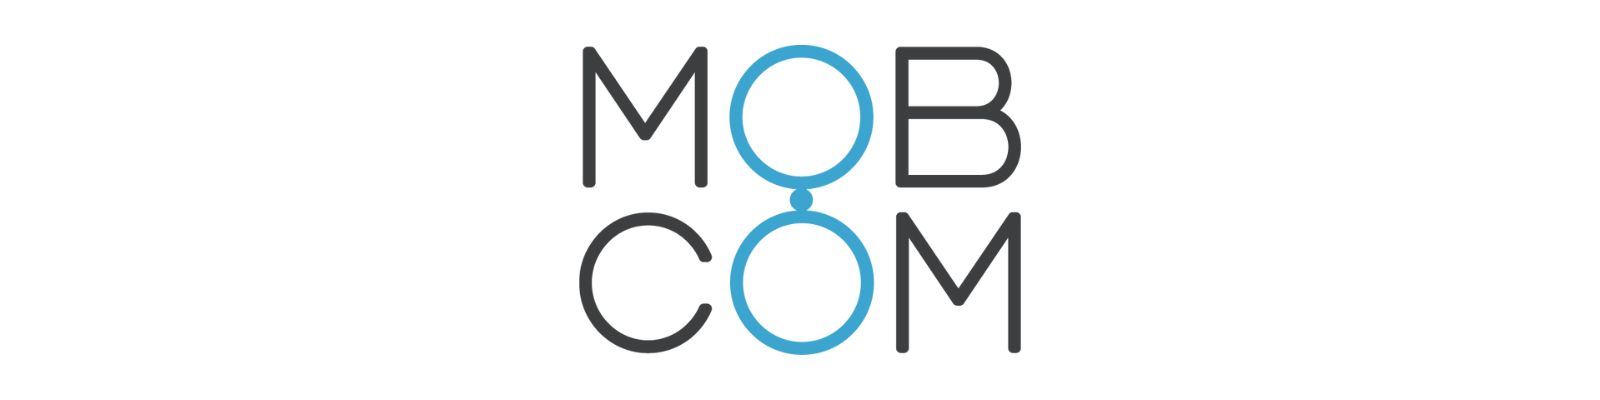 MobCom é confiável? Descubra a verdade sobre a empresa!